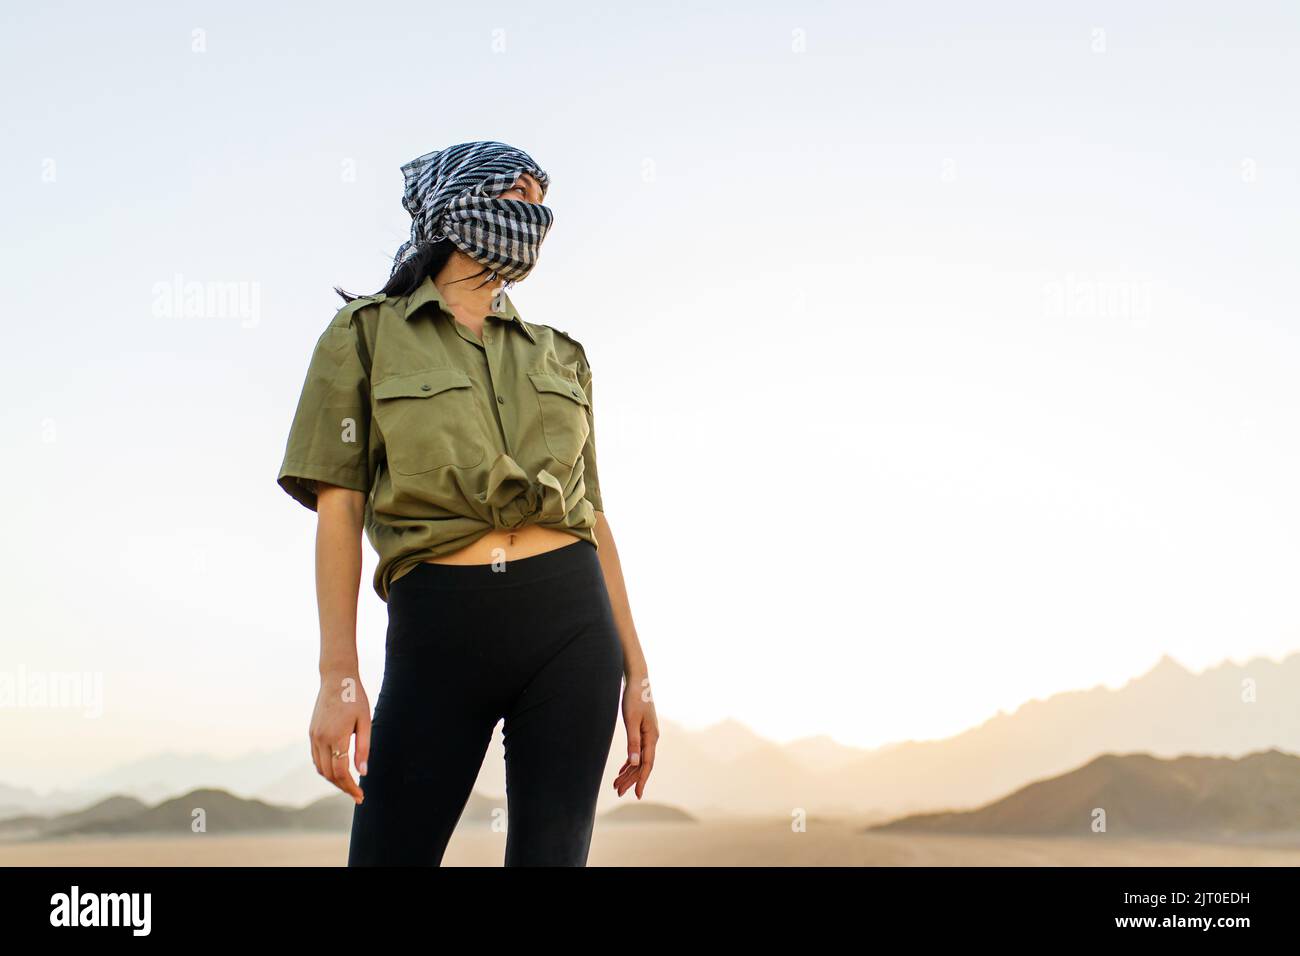 Frau mit verdecktem Kopf und Gesicht mit schwarz-weiß kariertem Schal stehen Wüste Hintergrund Stockfoto